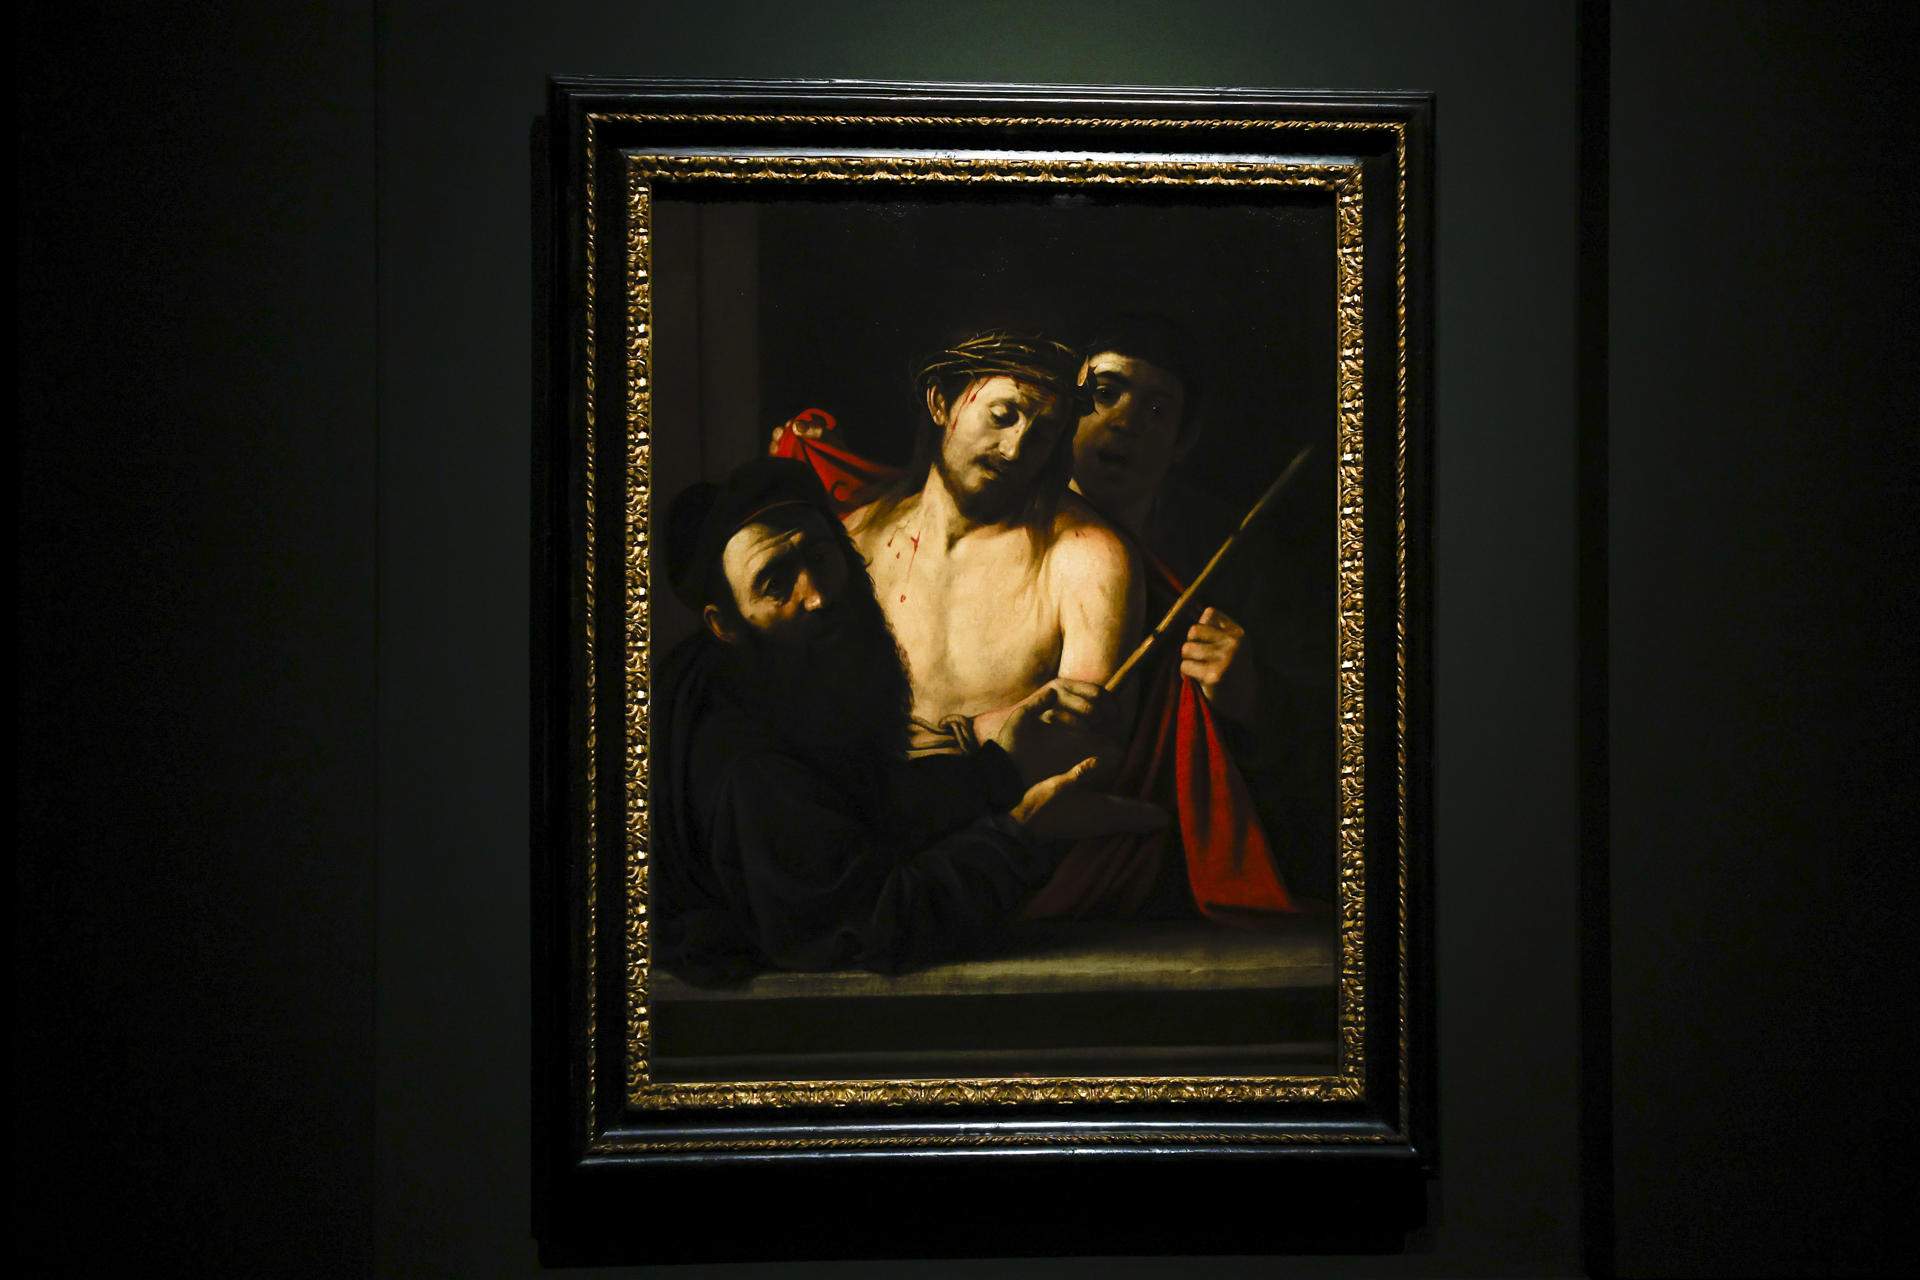 L''Eccehomo' perdut de Caravaggio ja és al Museu del Prado